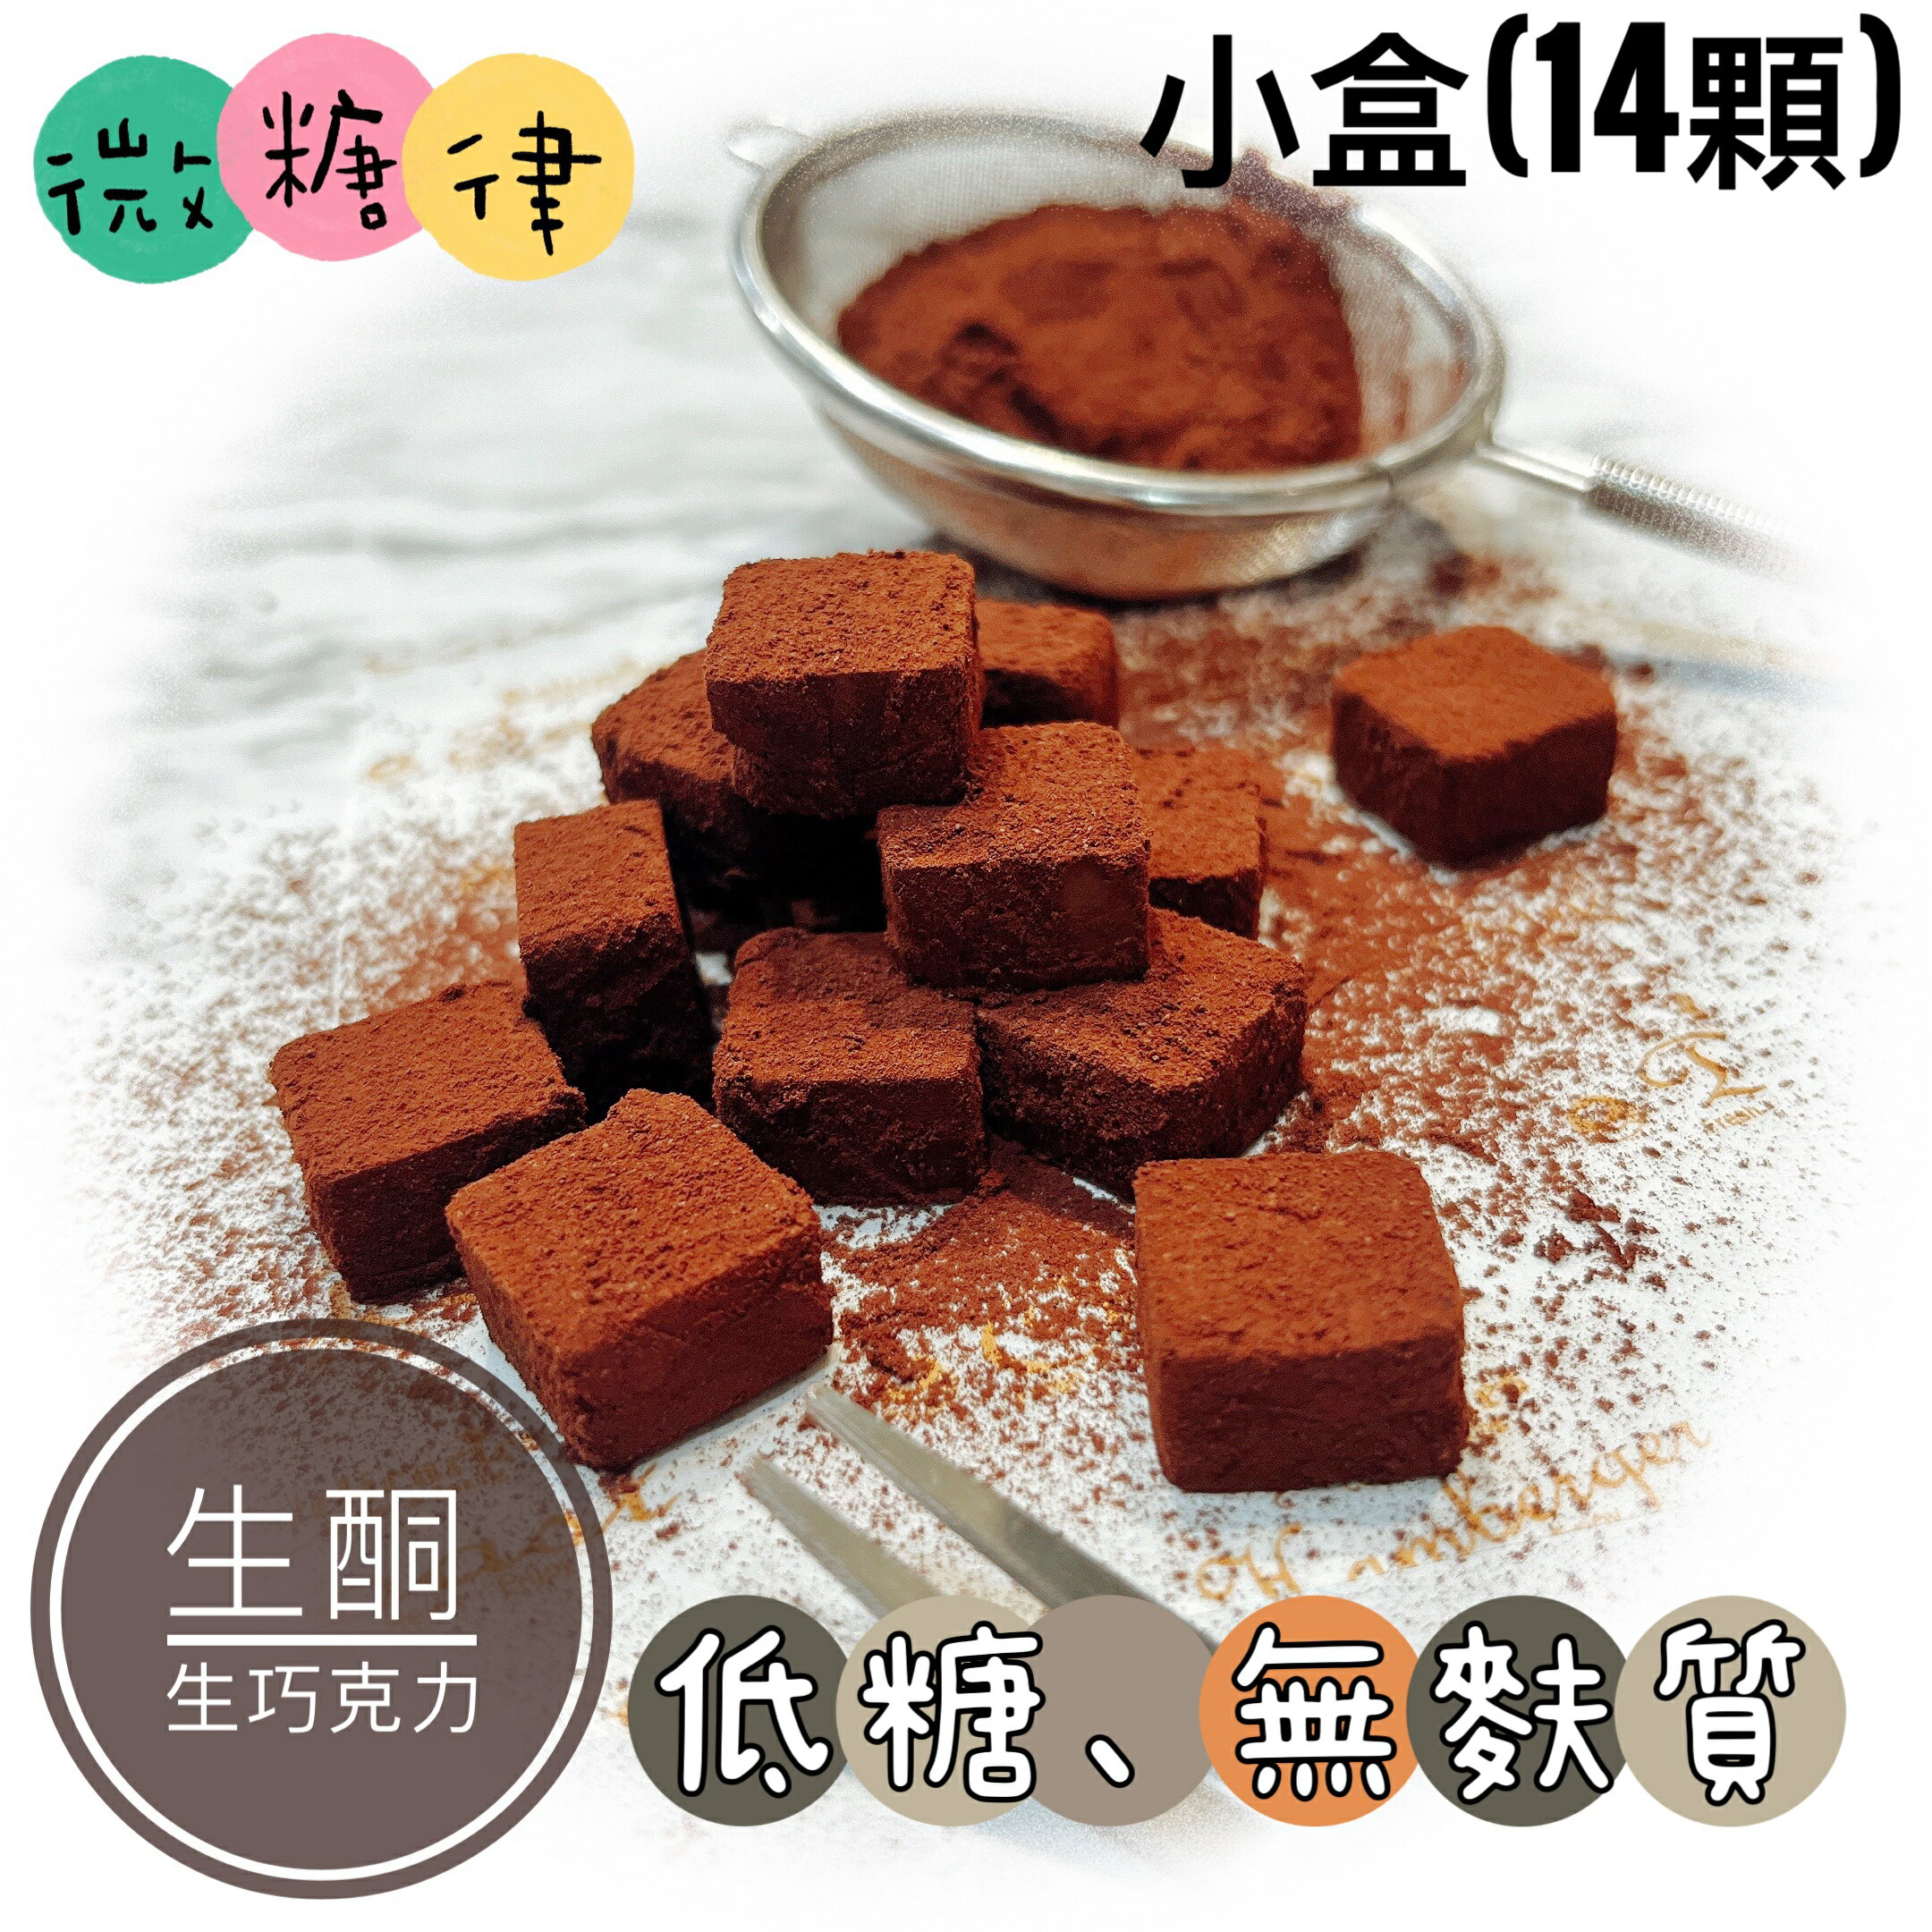 [微糖律]生酮生巧克力-S size(14顆)#低糖甜點#生酮甜點#無麩質#無麵粉